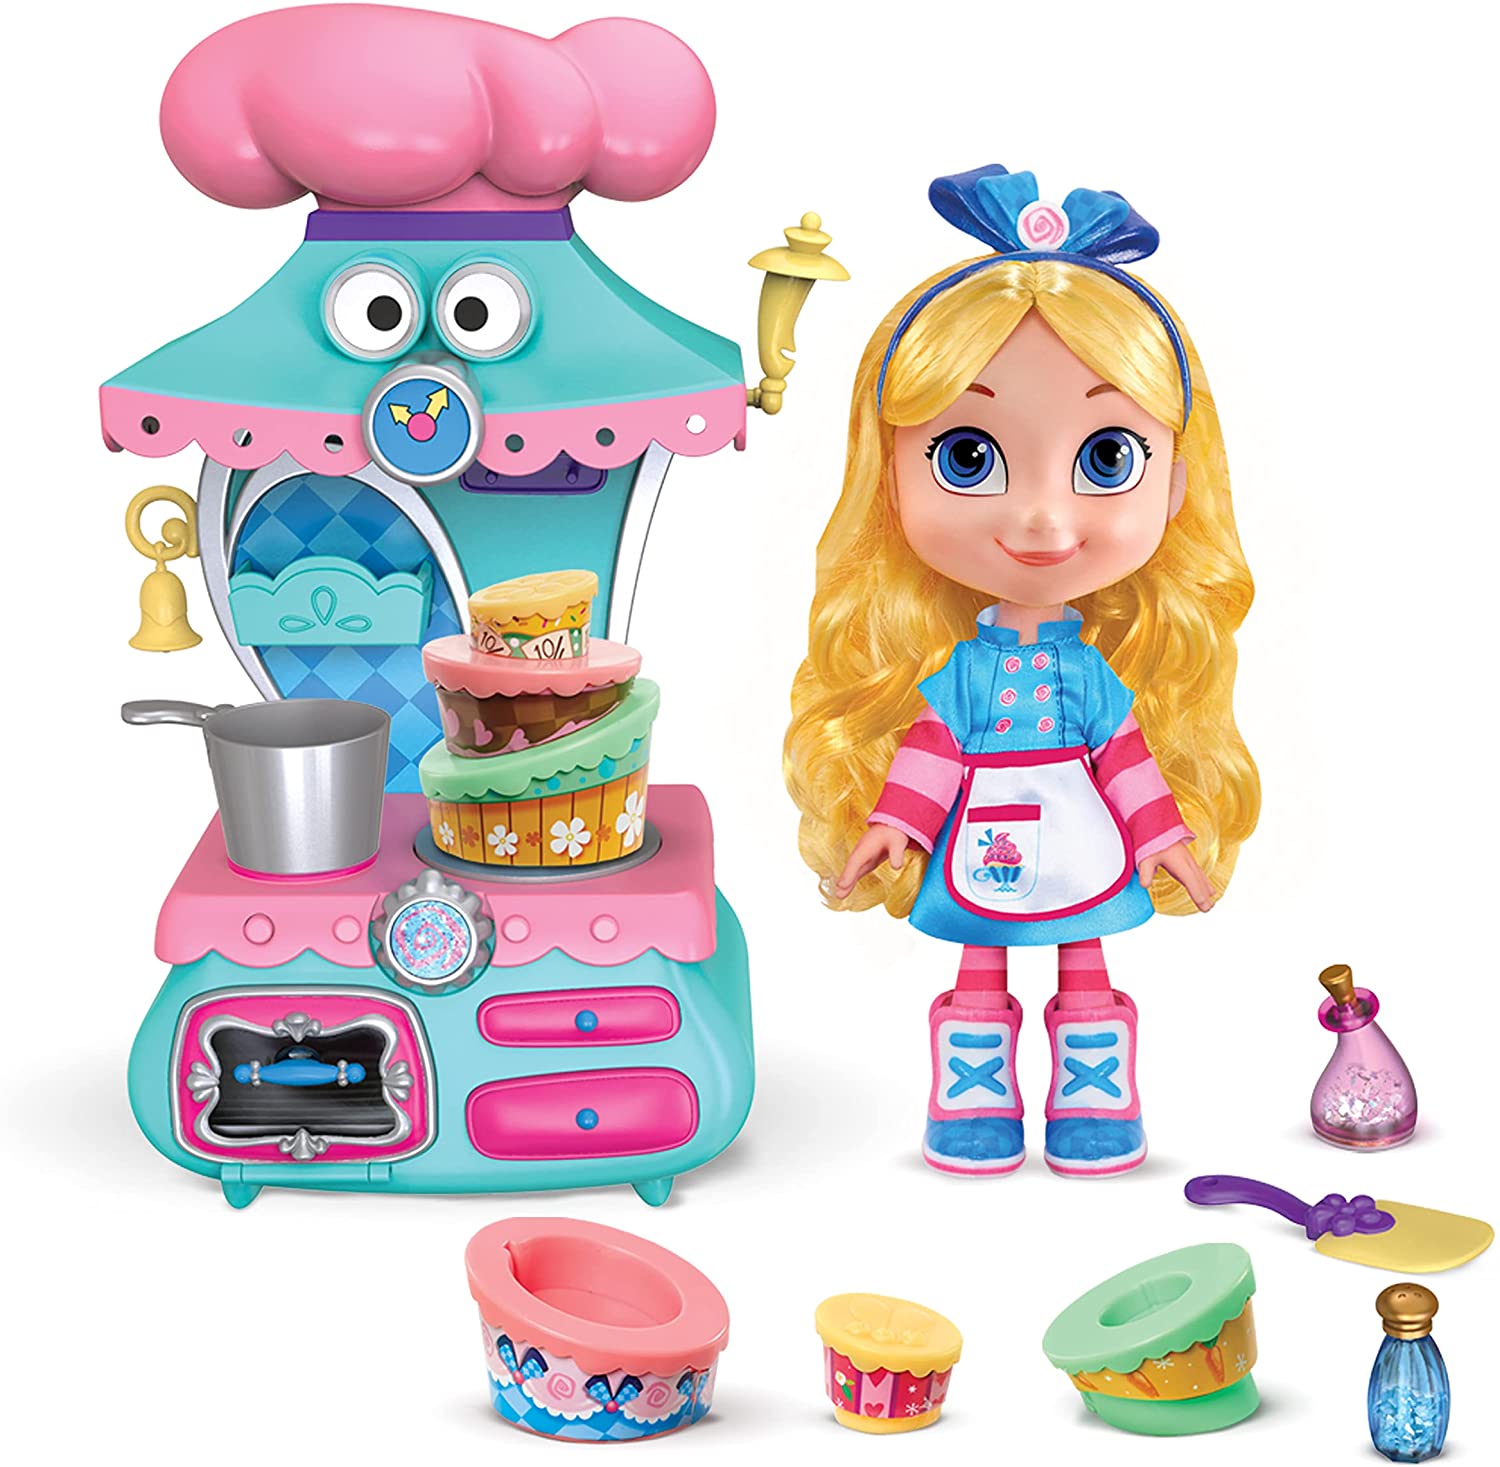 Alice's Wonderland Bakery: Wonderland Cake Maker